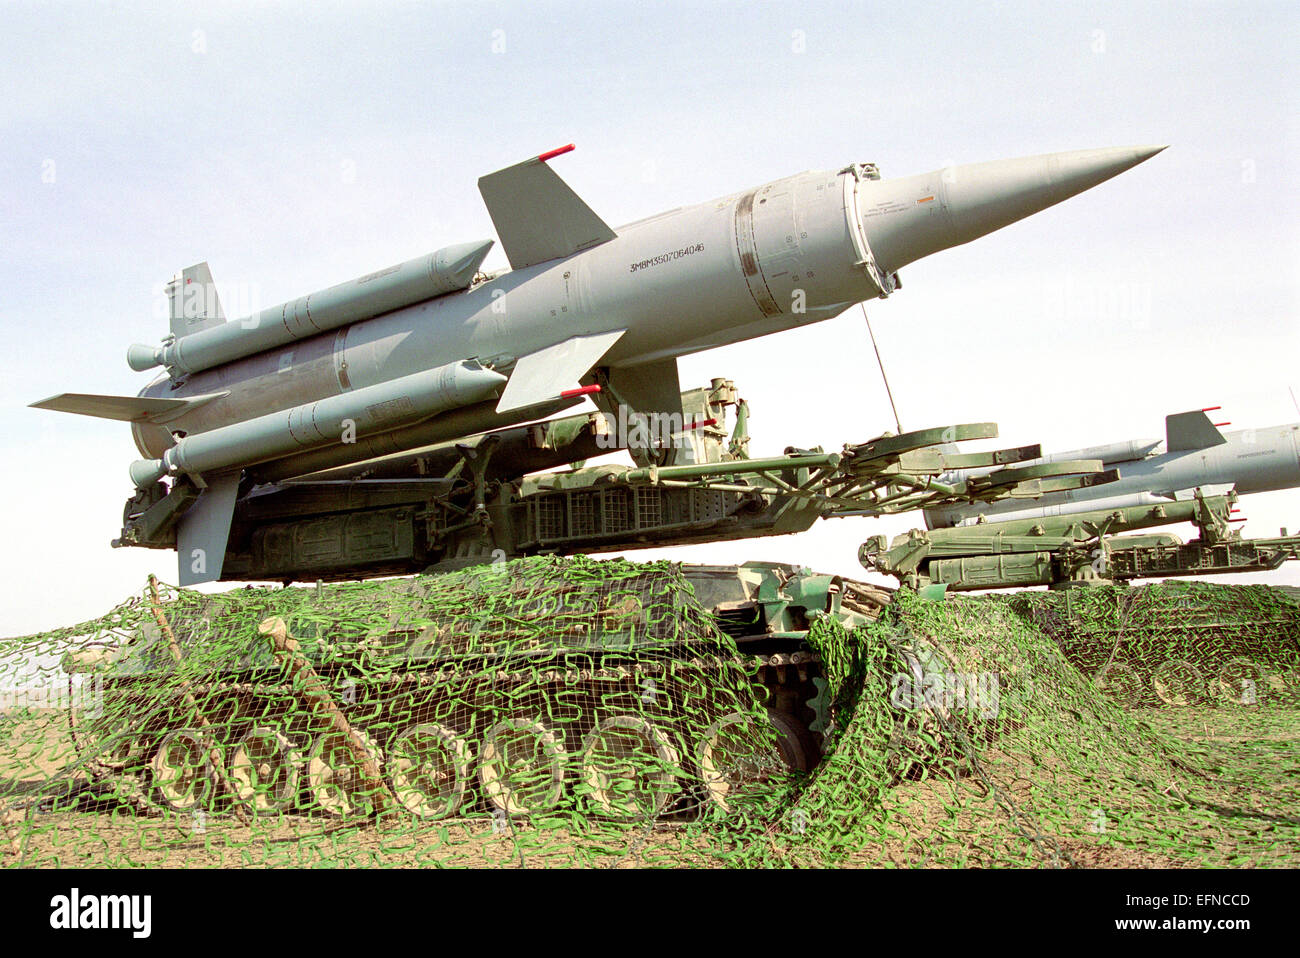 Missile Air Defense Systems Krug (SA-4 Ganef) nella schermata di avvio. Chauda, Crimea. 1999. Foto Stock